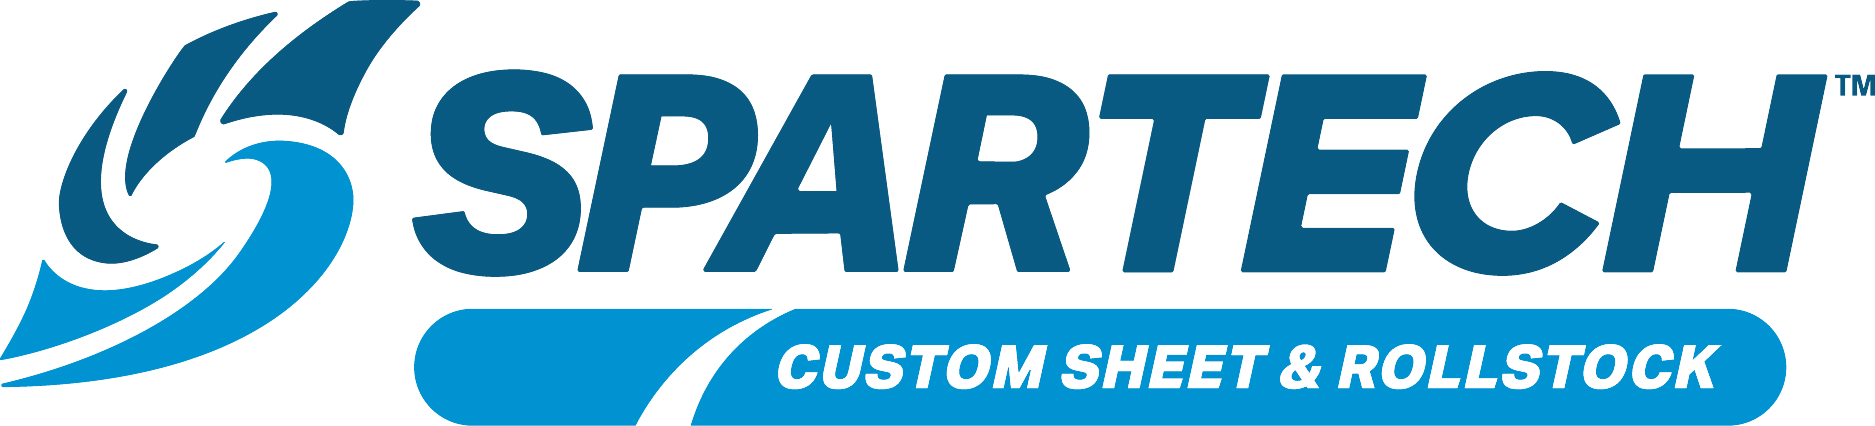 Spartech Company Logo Partner of ASP Plastics"